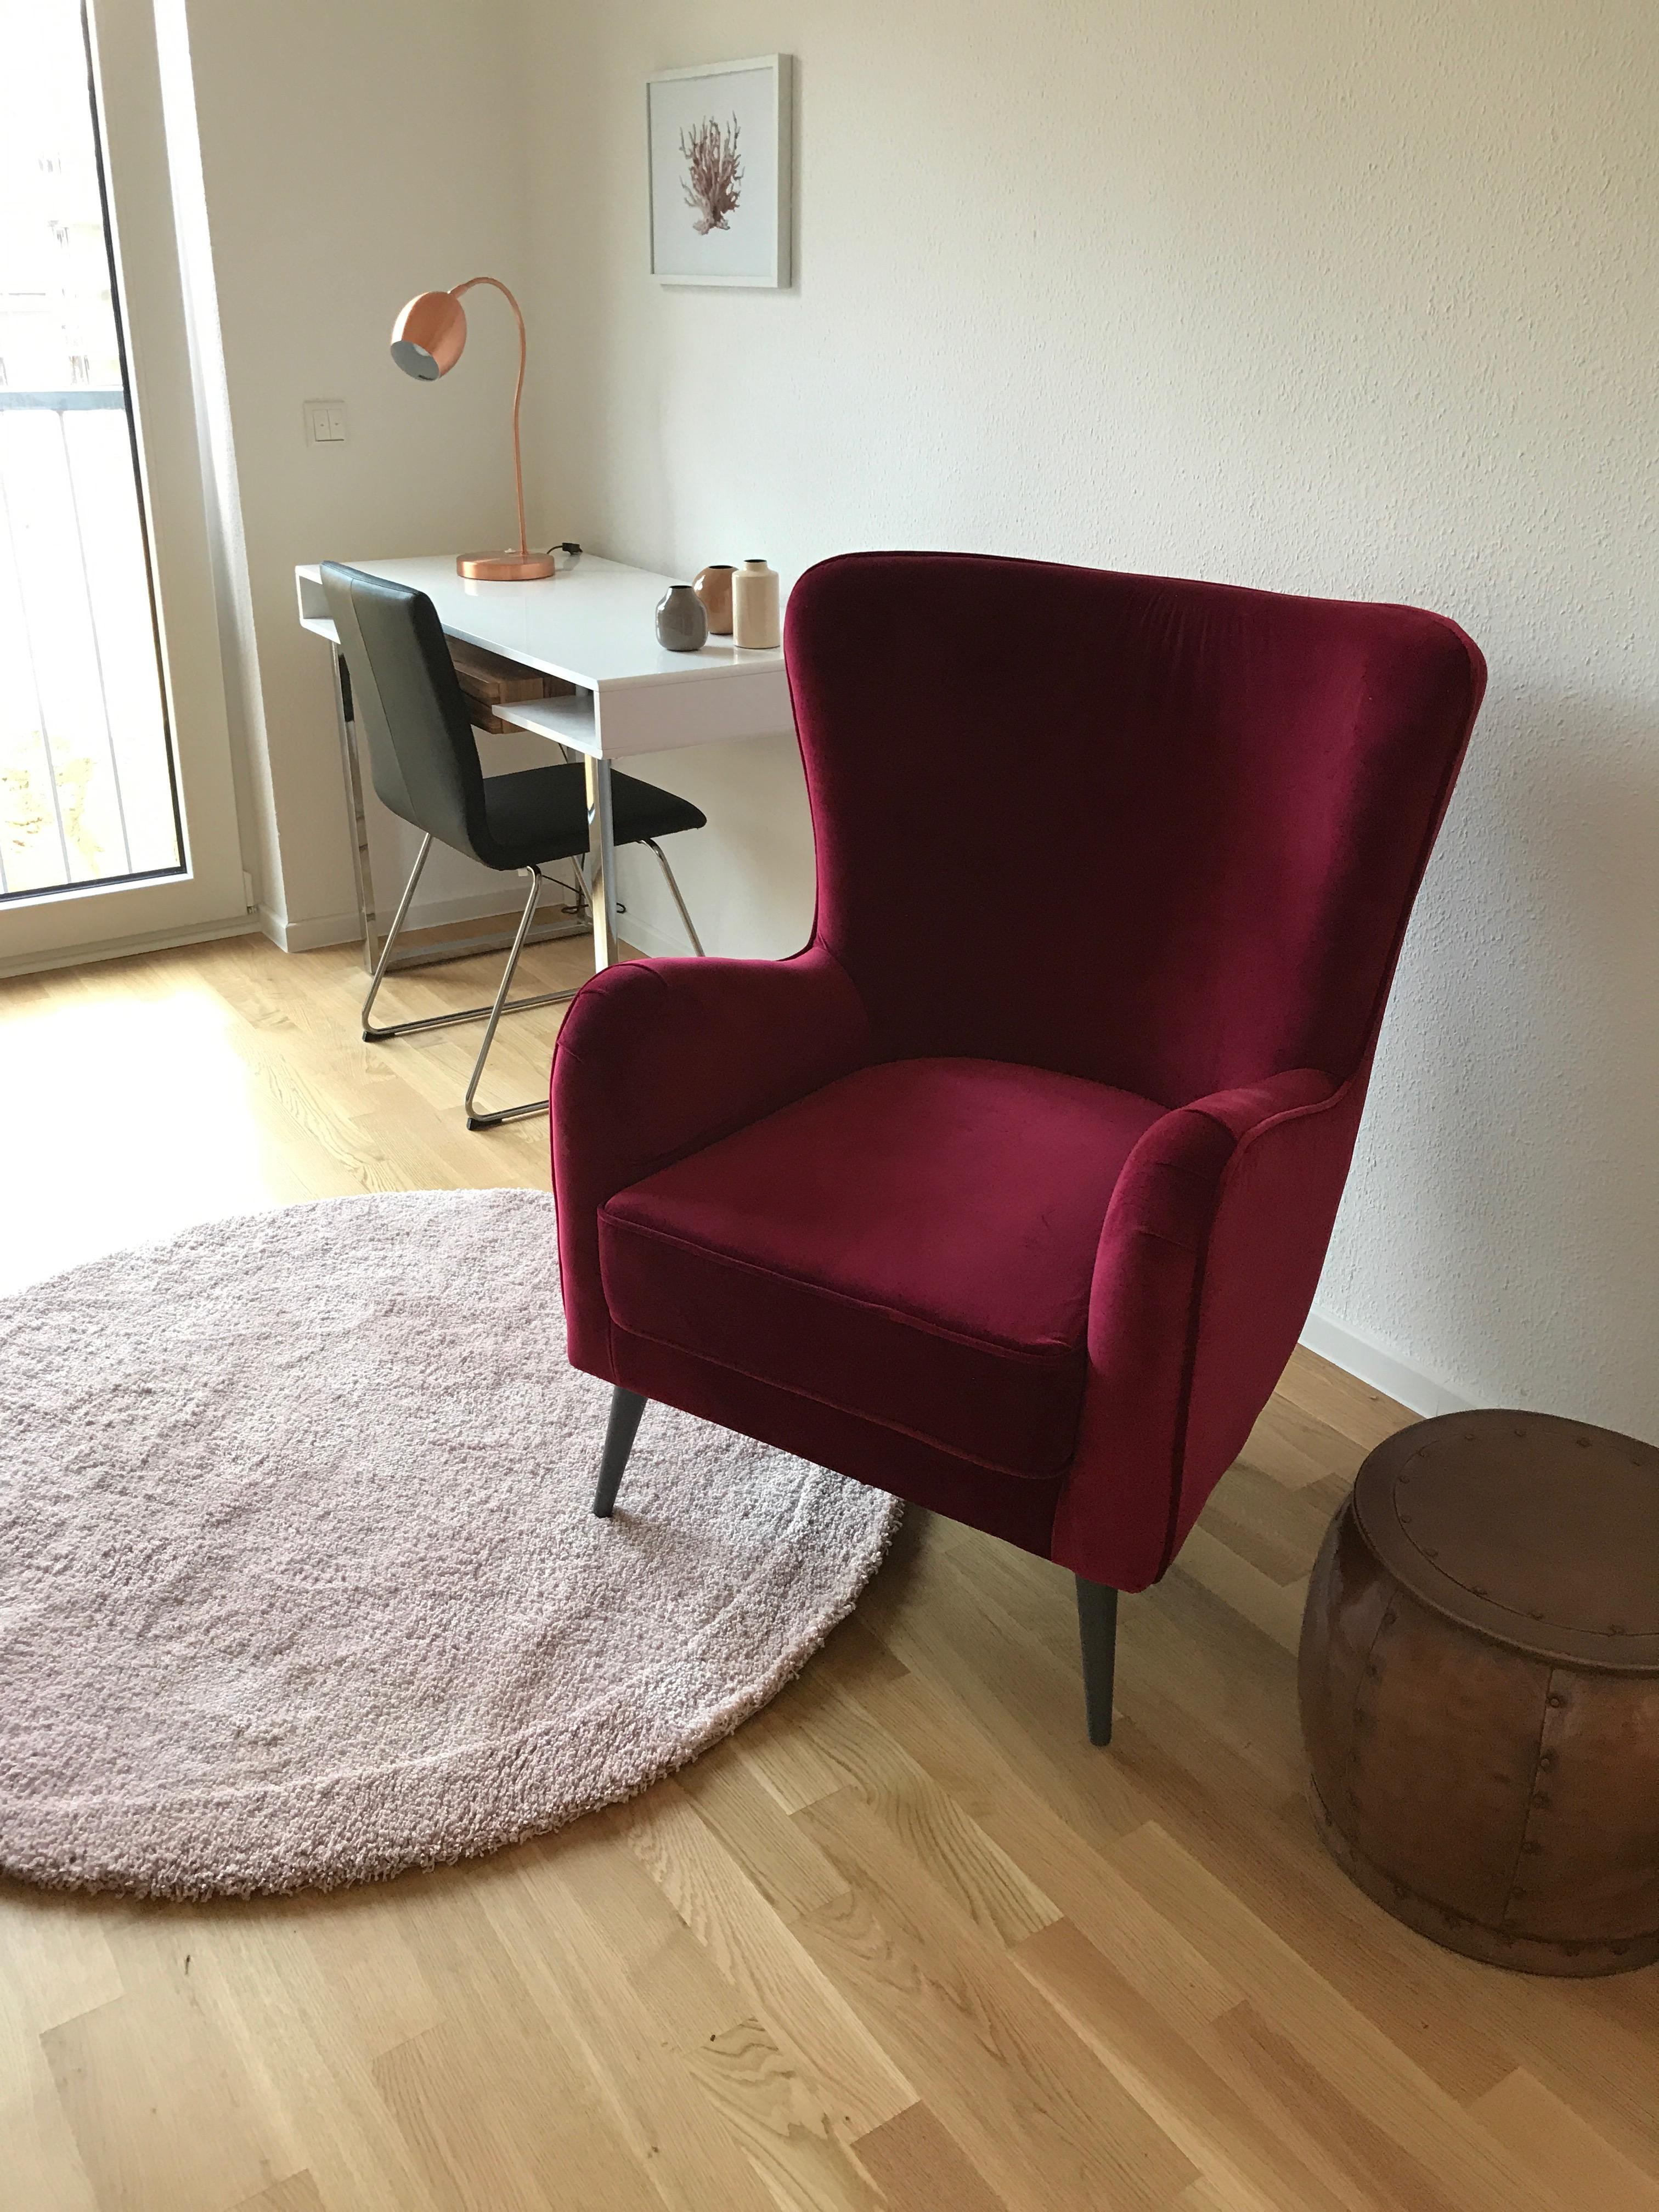 Sessel bordeauxrot und Arbeitstisch #arbeitstisch #sessel #runderteppich ©Miracle Room